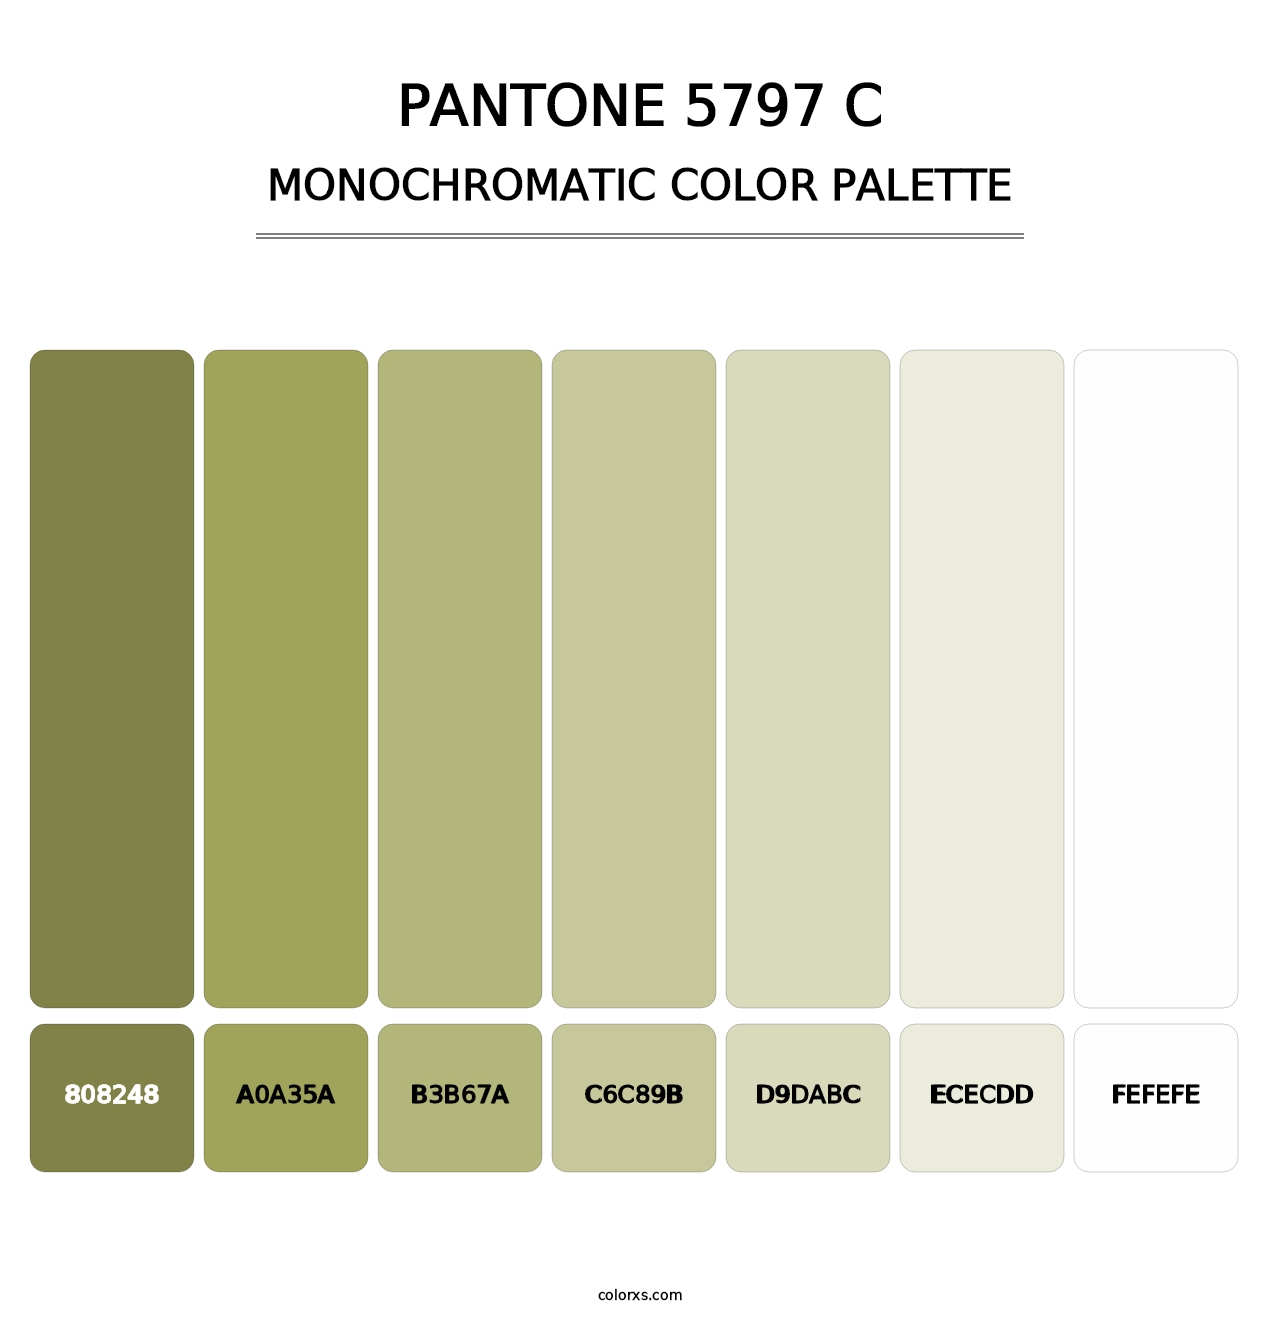 PANTONE 5797 C - Monochromatic Color Palette